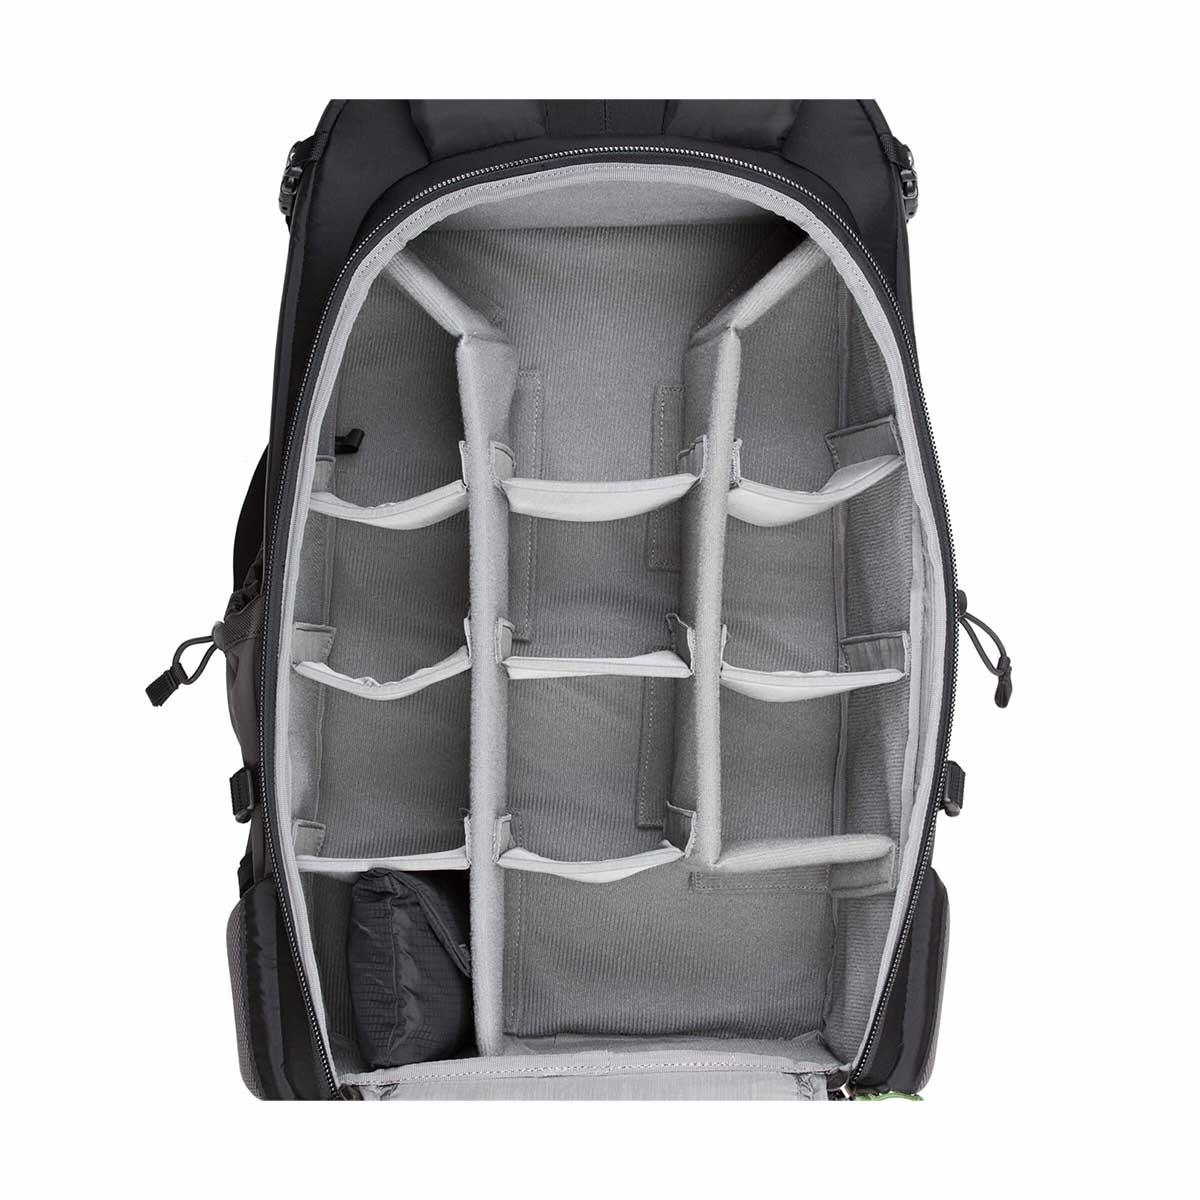 Mindshift Gear BackLight 36L Backpack (Woodland Green)